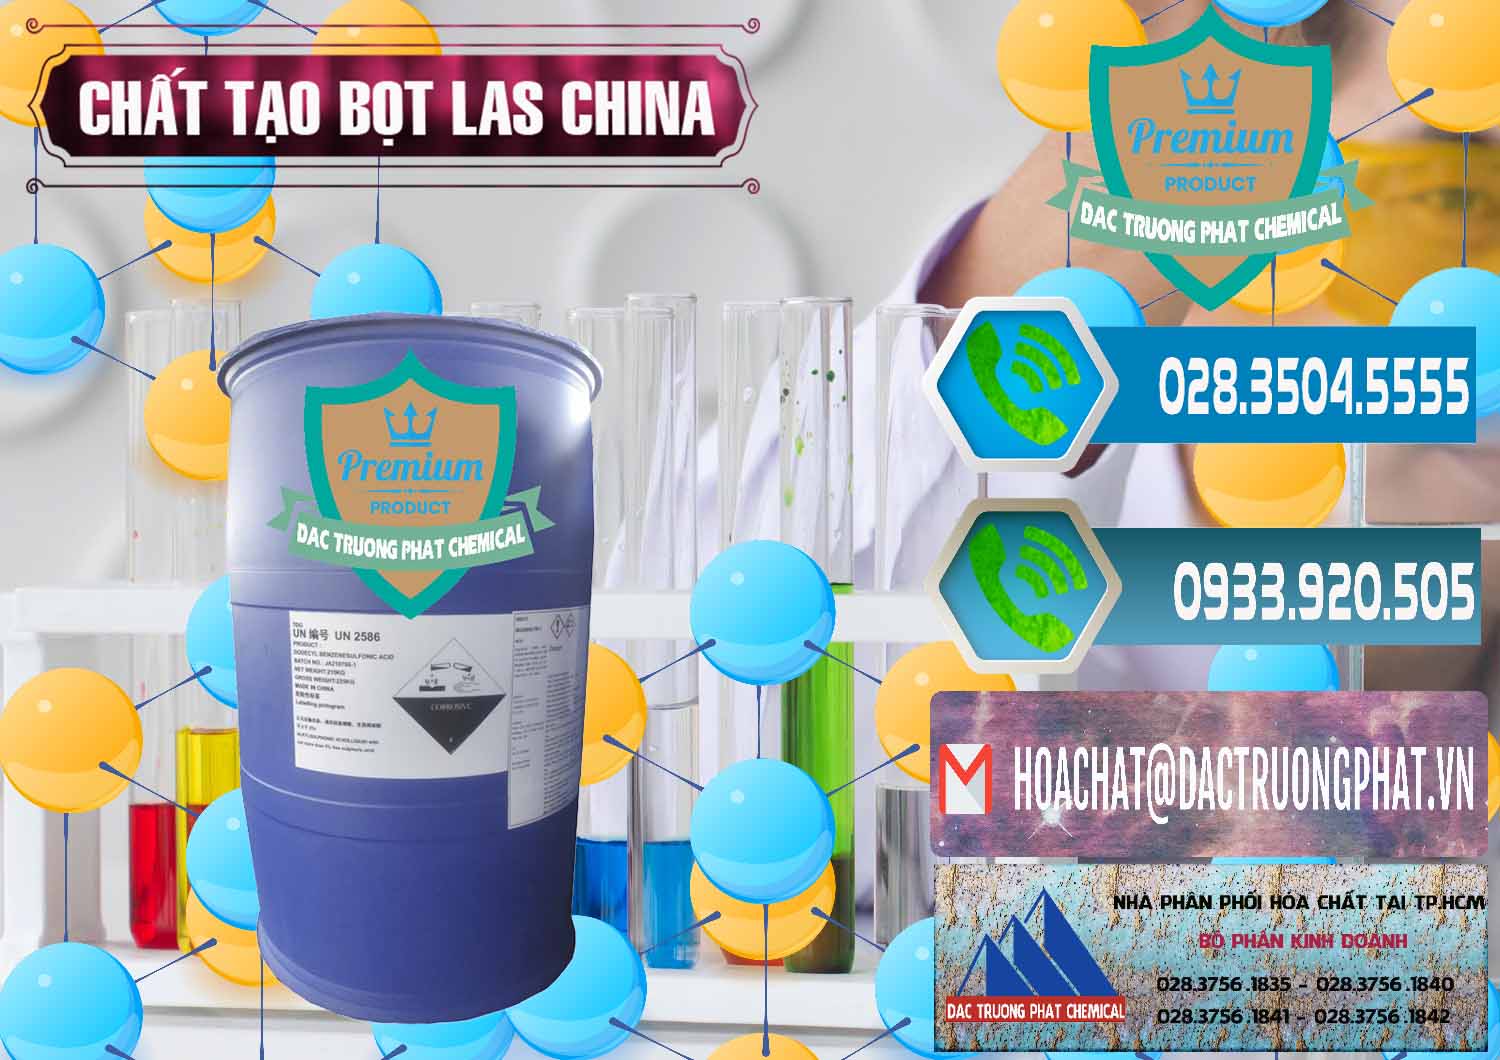 Cty chuyên bán - cung ứng Chất tạo bọt Las Trung Quốc China - 0451 - Cty chuyên nhập khẩu và phân phối hóa chất tại TP.HCM - congtyhoachat.net